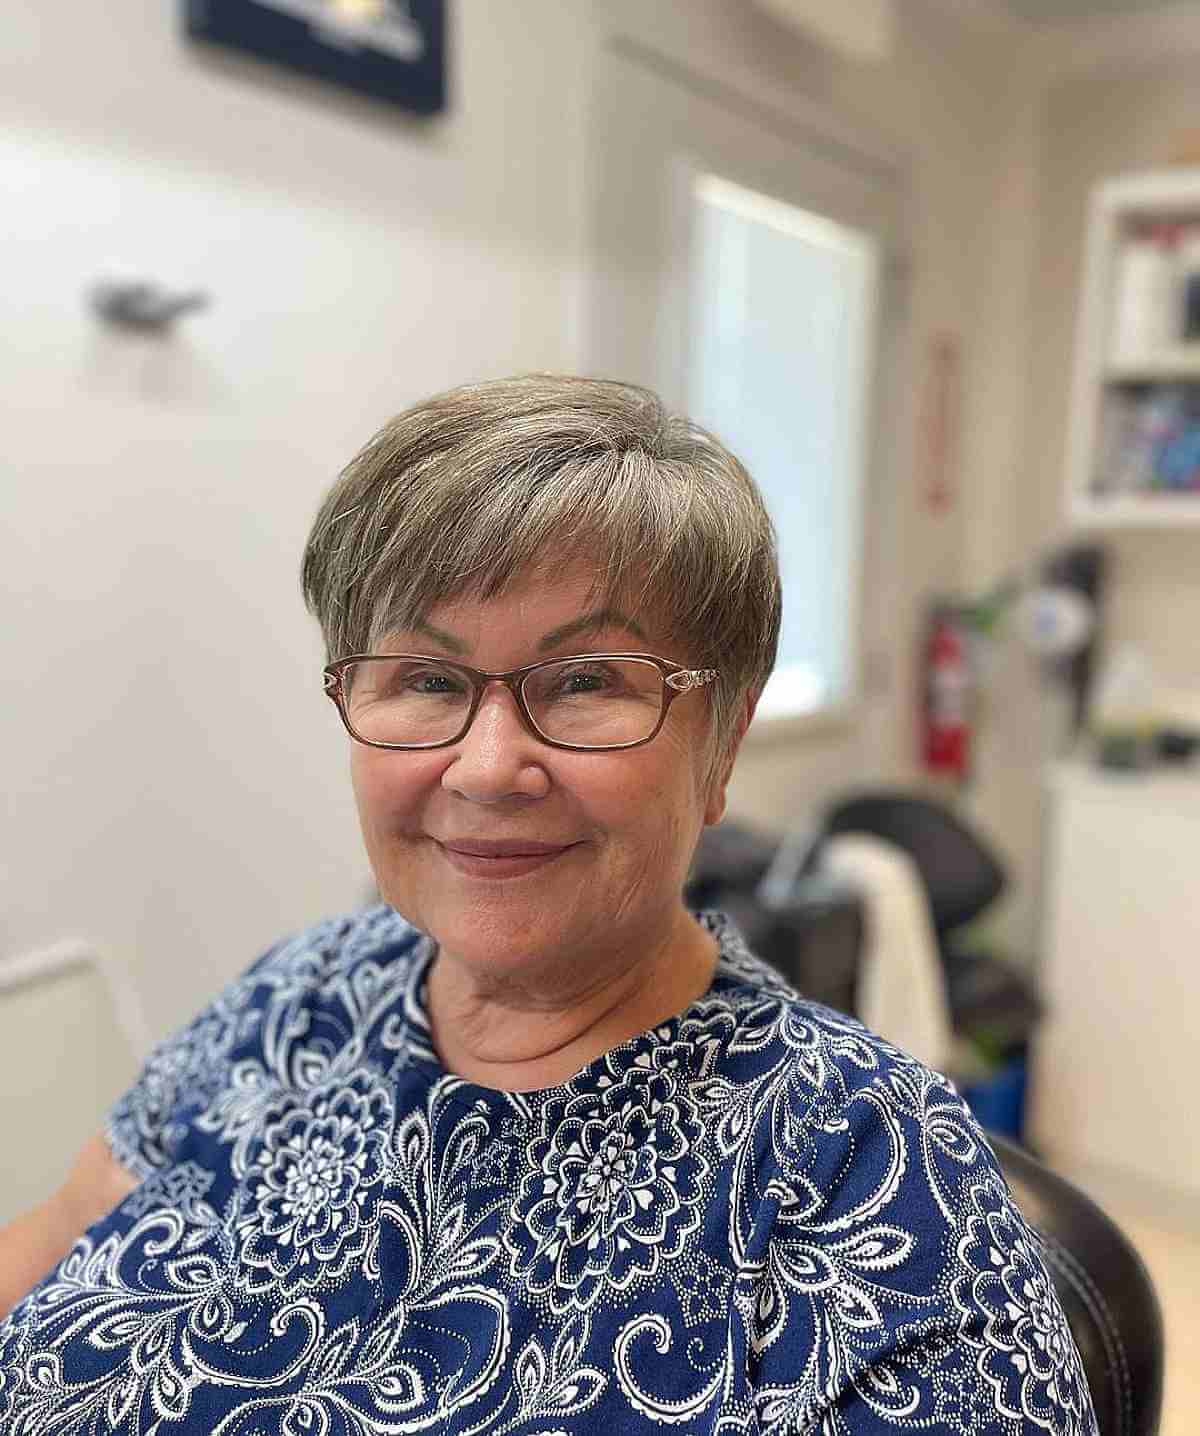 Kurzes graues Haar mit Mikropony für eine Frau in ihren 50ern